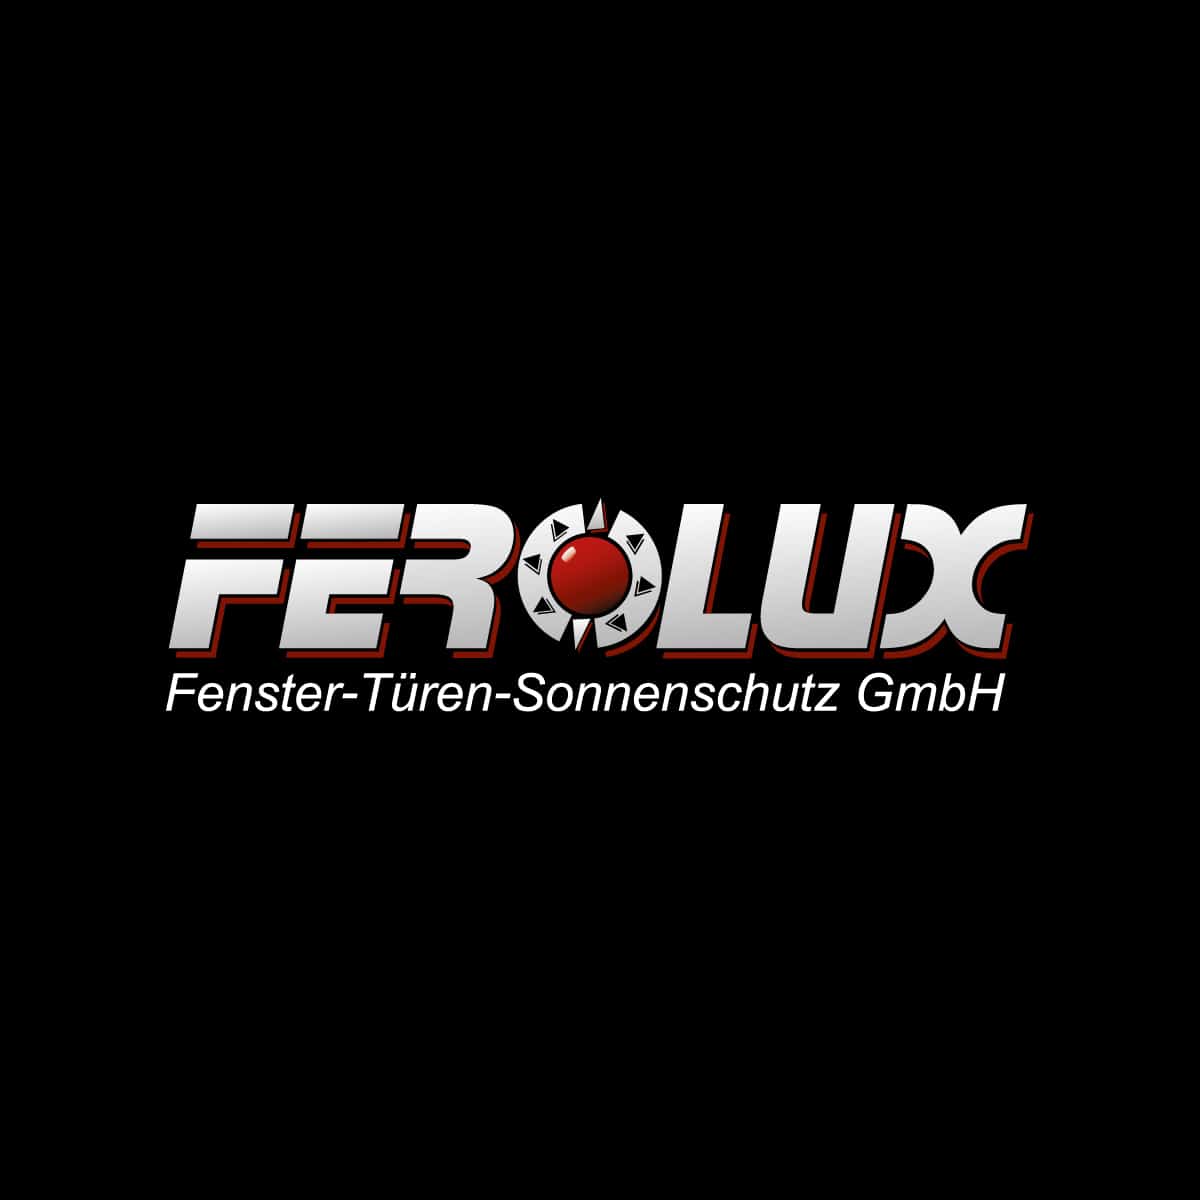 (c) Ferolux.de